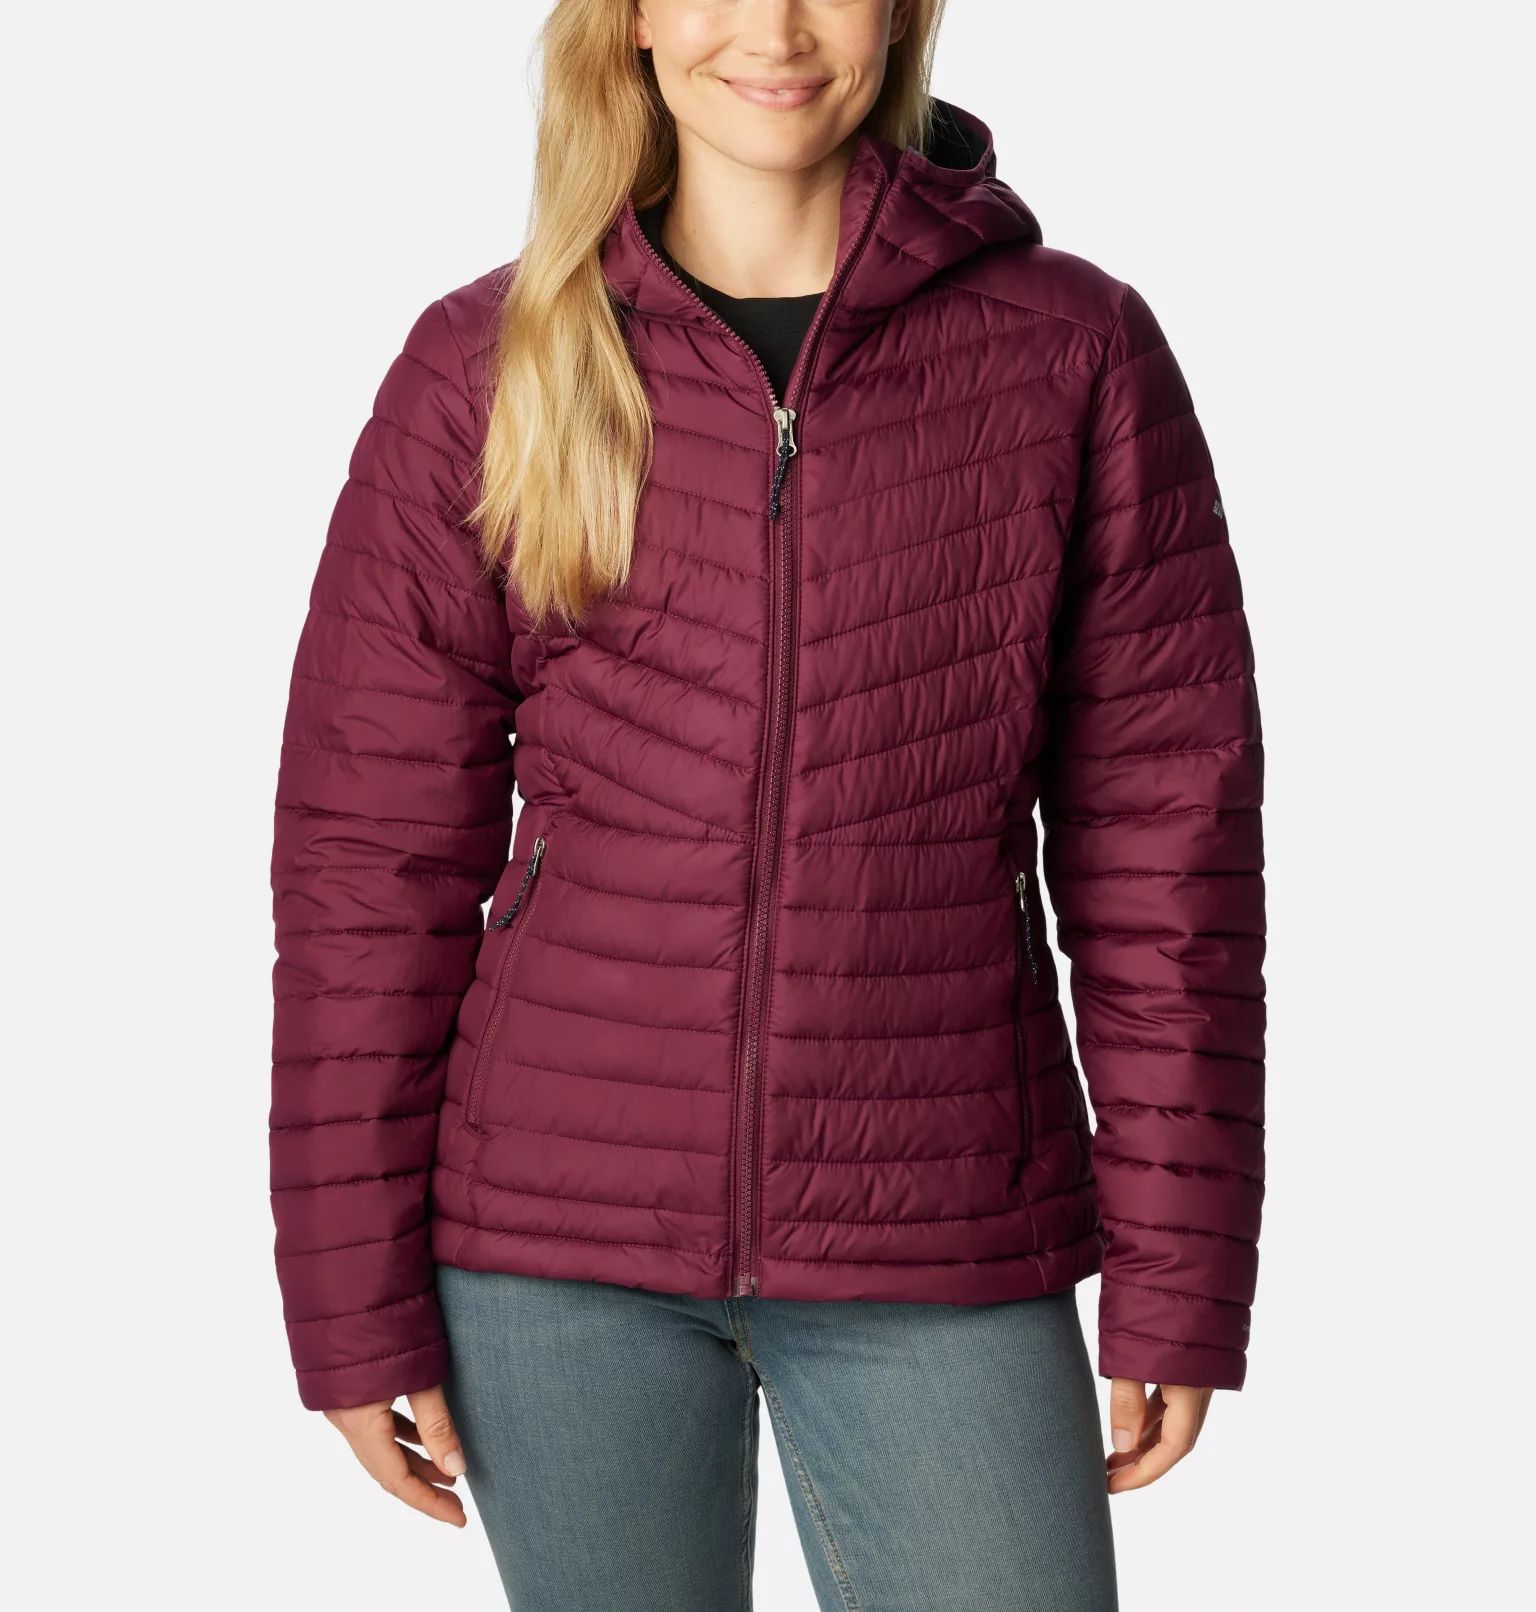 Women's Slope Edge™ Hooded Jacket | Columbia Sportswear